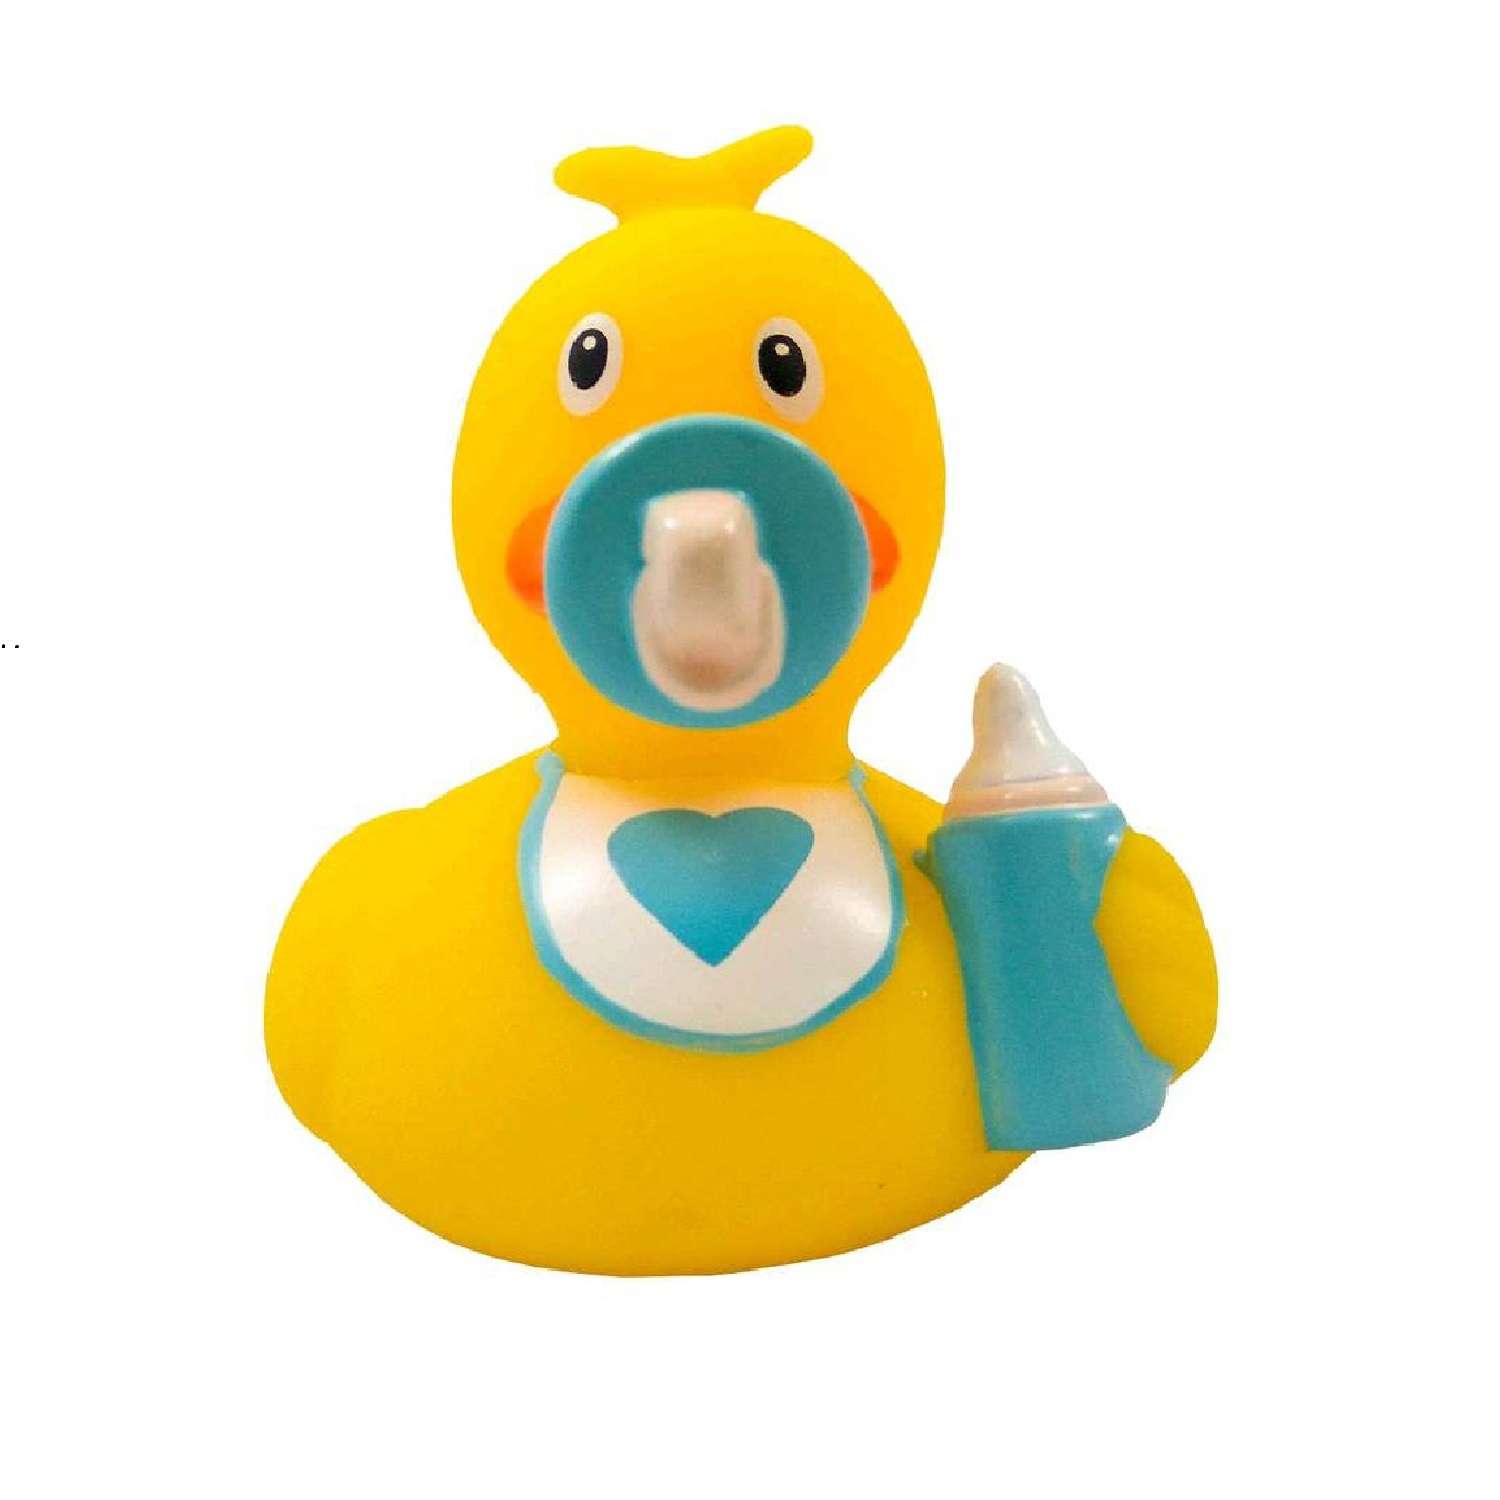 Игрушка Funny ducks для ванной Ребенок мальчик уточка 1849 - фото 2